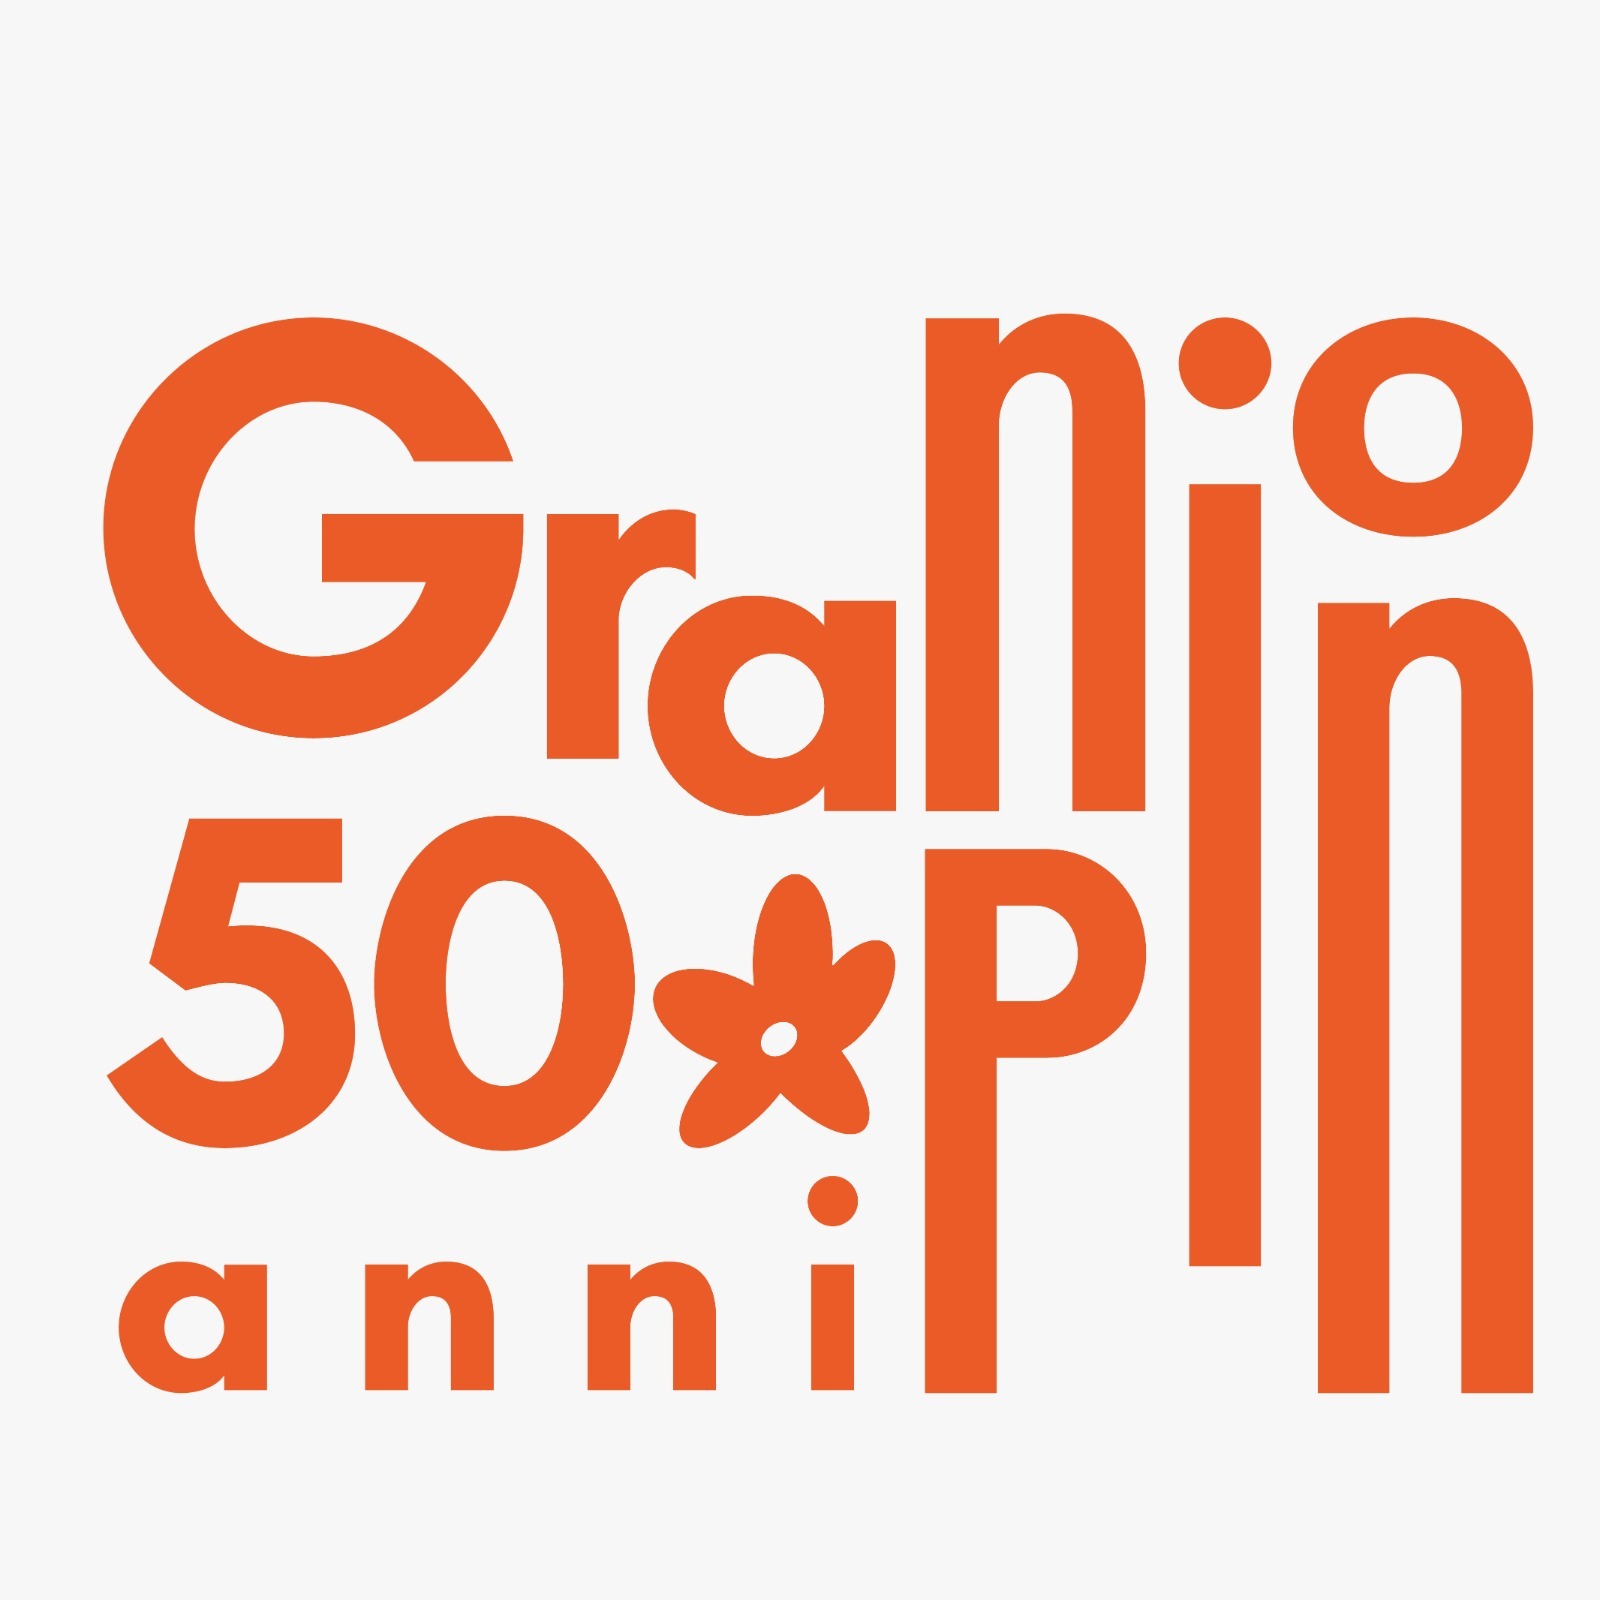 Gran Pino 50°